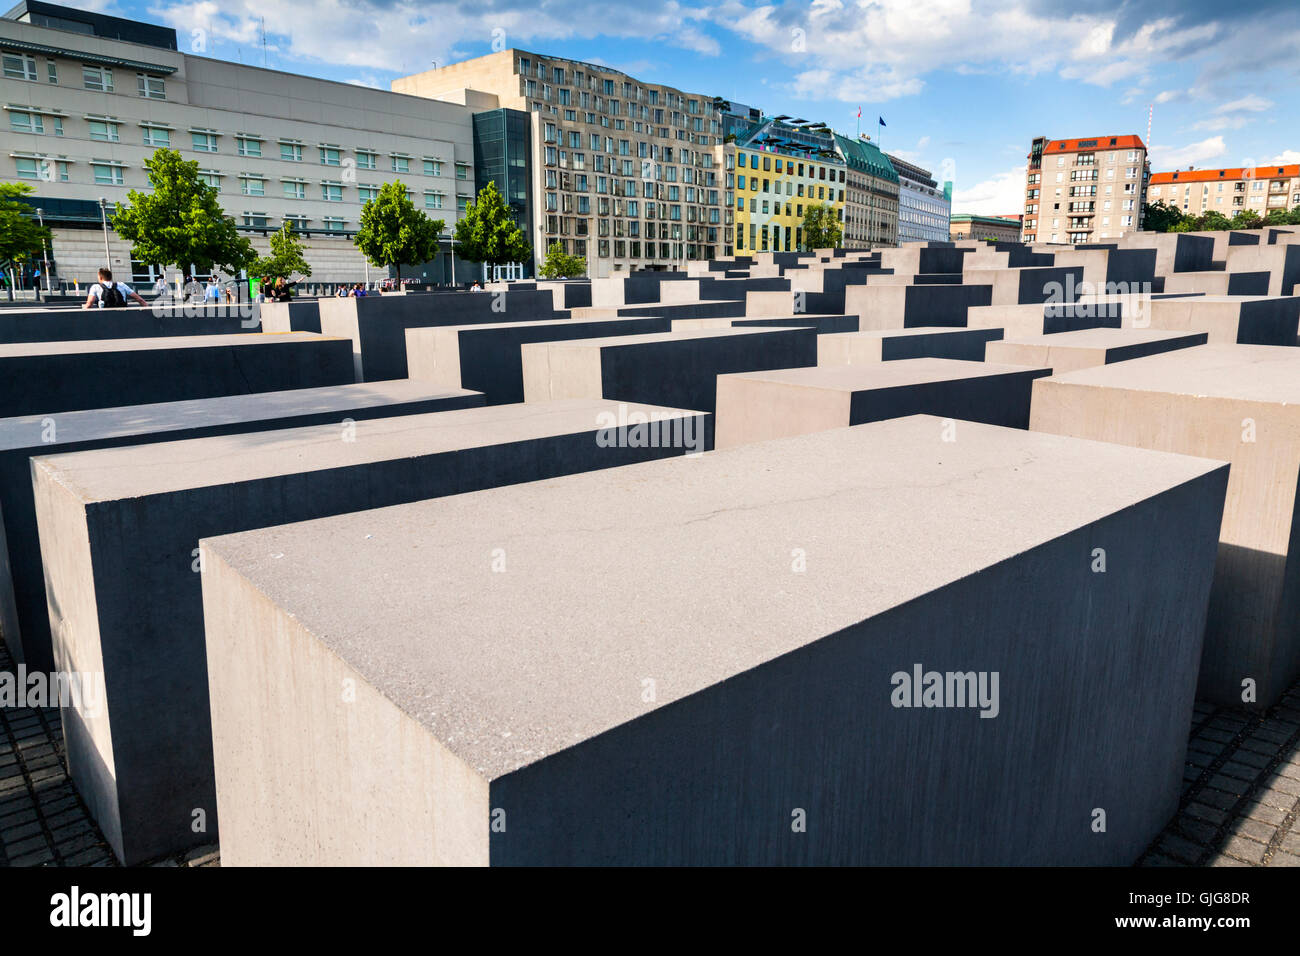 Das Holocaust-Mahnmal für die ermordeten Juden Europas, Berlin, Deutschland. Stockfoto